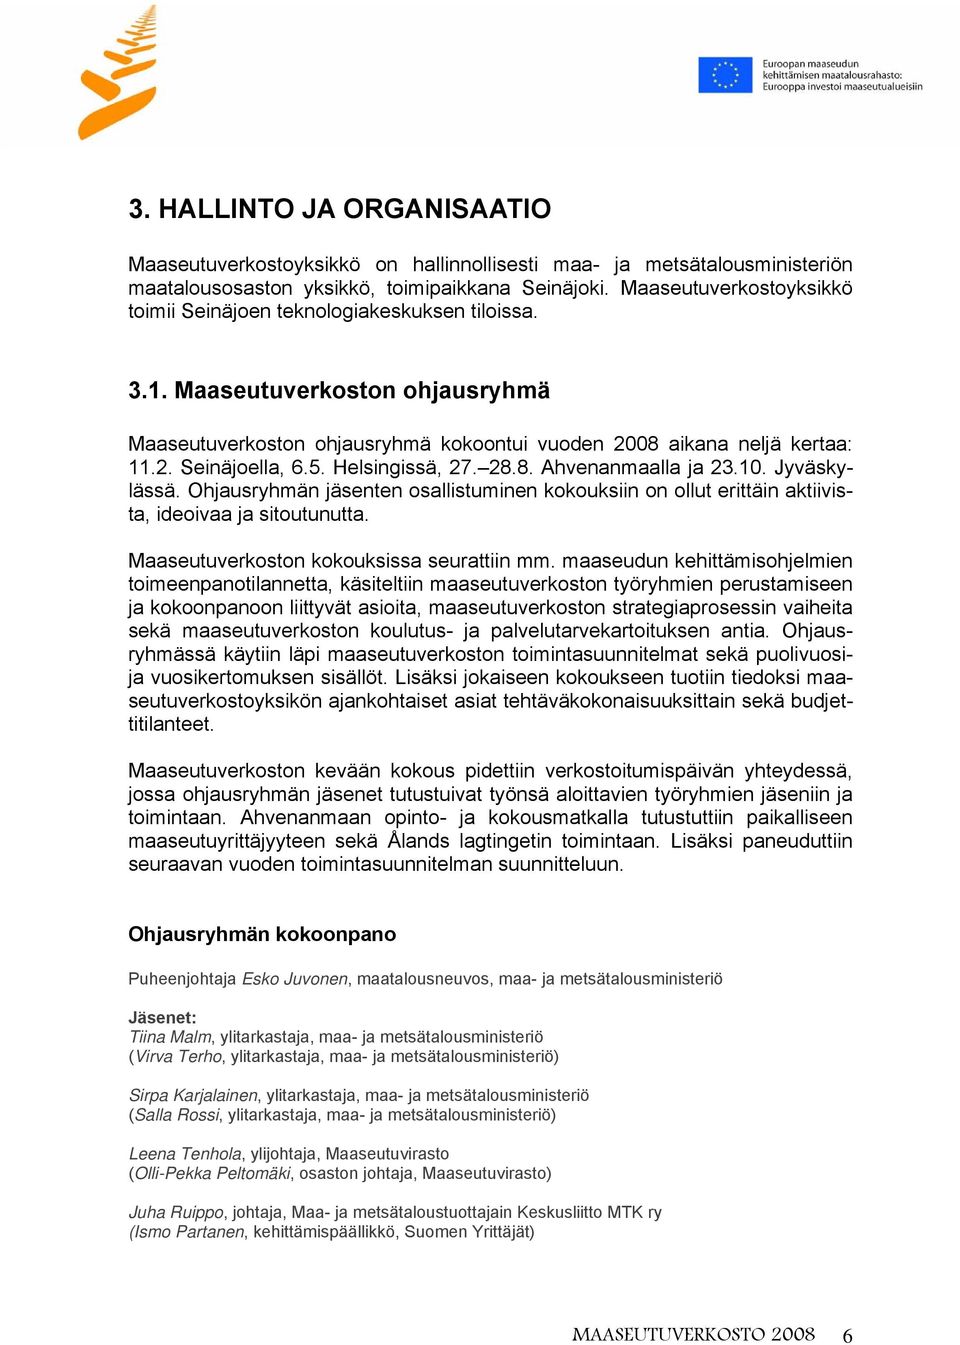 5. Helsingissä, 27. 28.8. Ahvenanmaalla ja 23.10. Jyväskylässä. Ohjausryhmän jäsenten osallistuminen kokouksiin on ollut erittäin aktiivista, ideoivaa ja sitoutunutta.